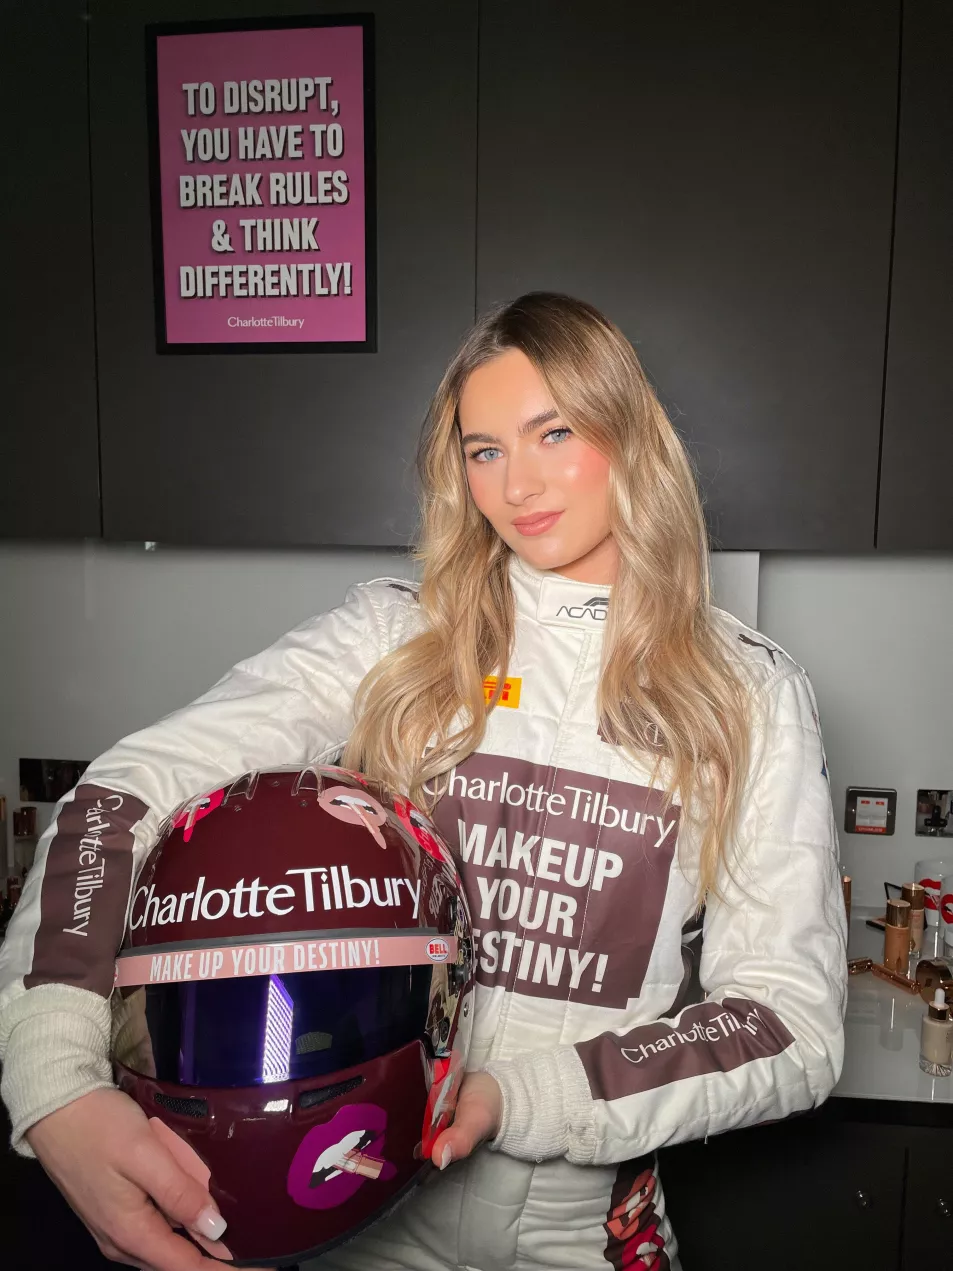 Lola Lovinfosse F1 Academy driver for Charlotte Tilbury